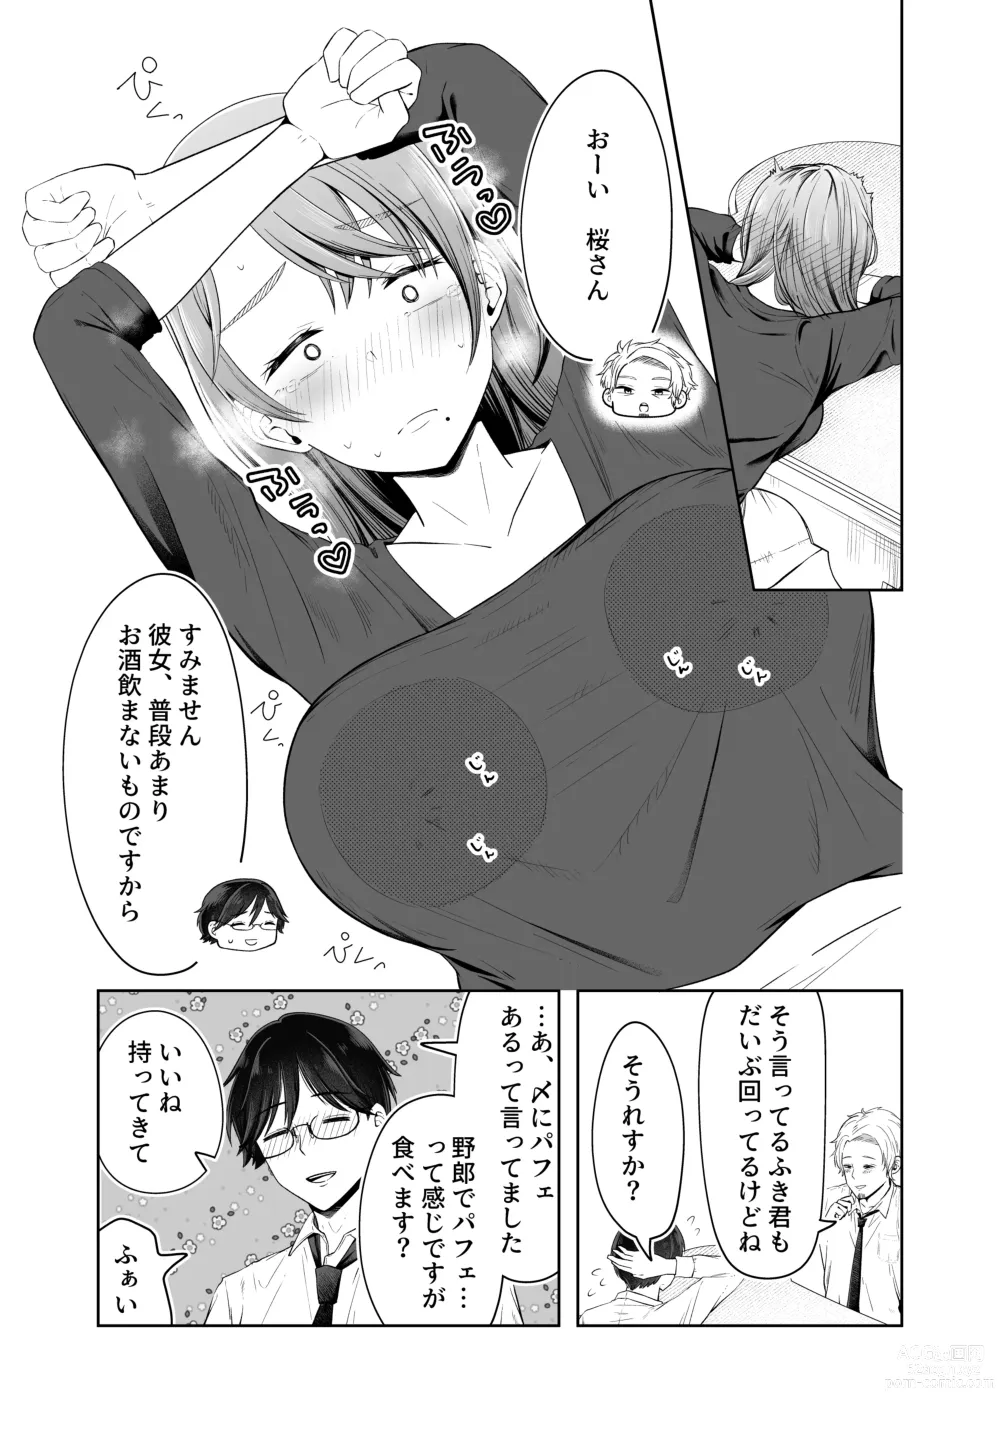 Page 15 of doujinshi Danna no Joushi ni Odosareru.